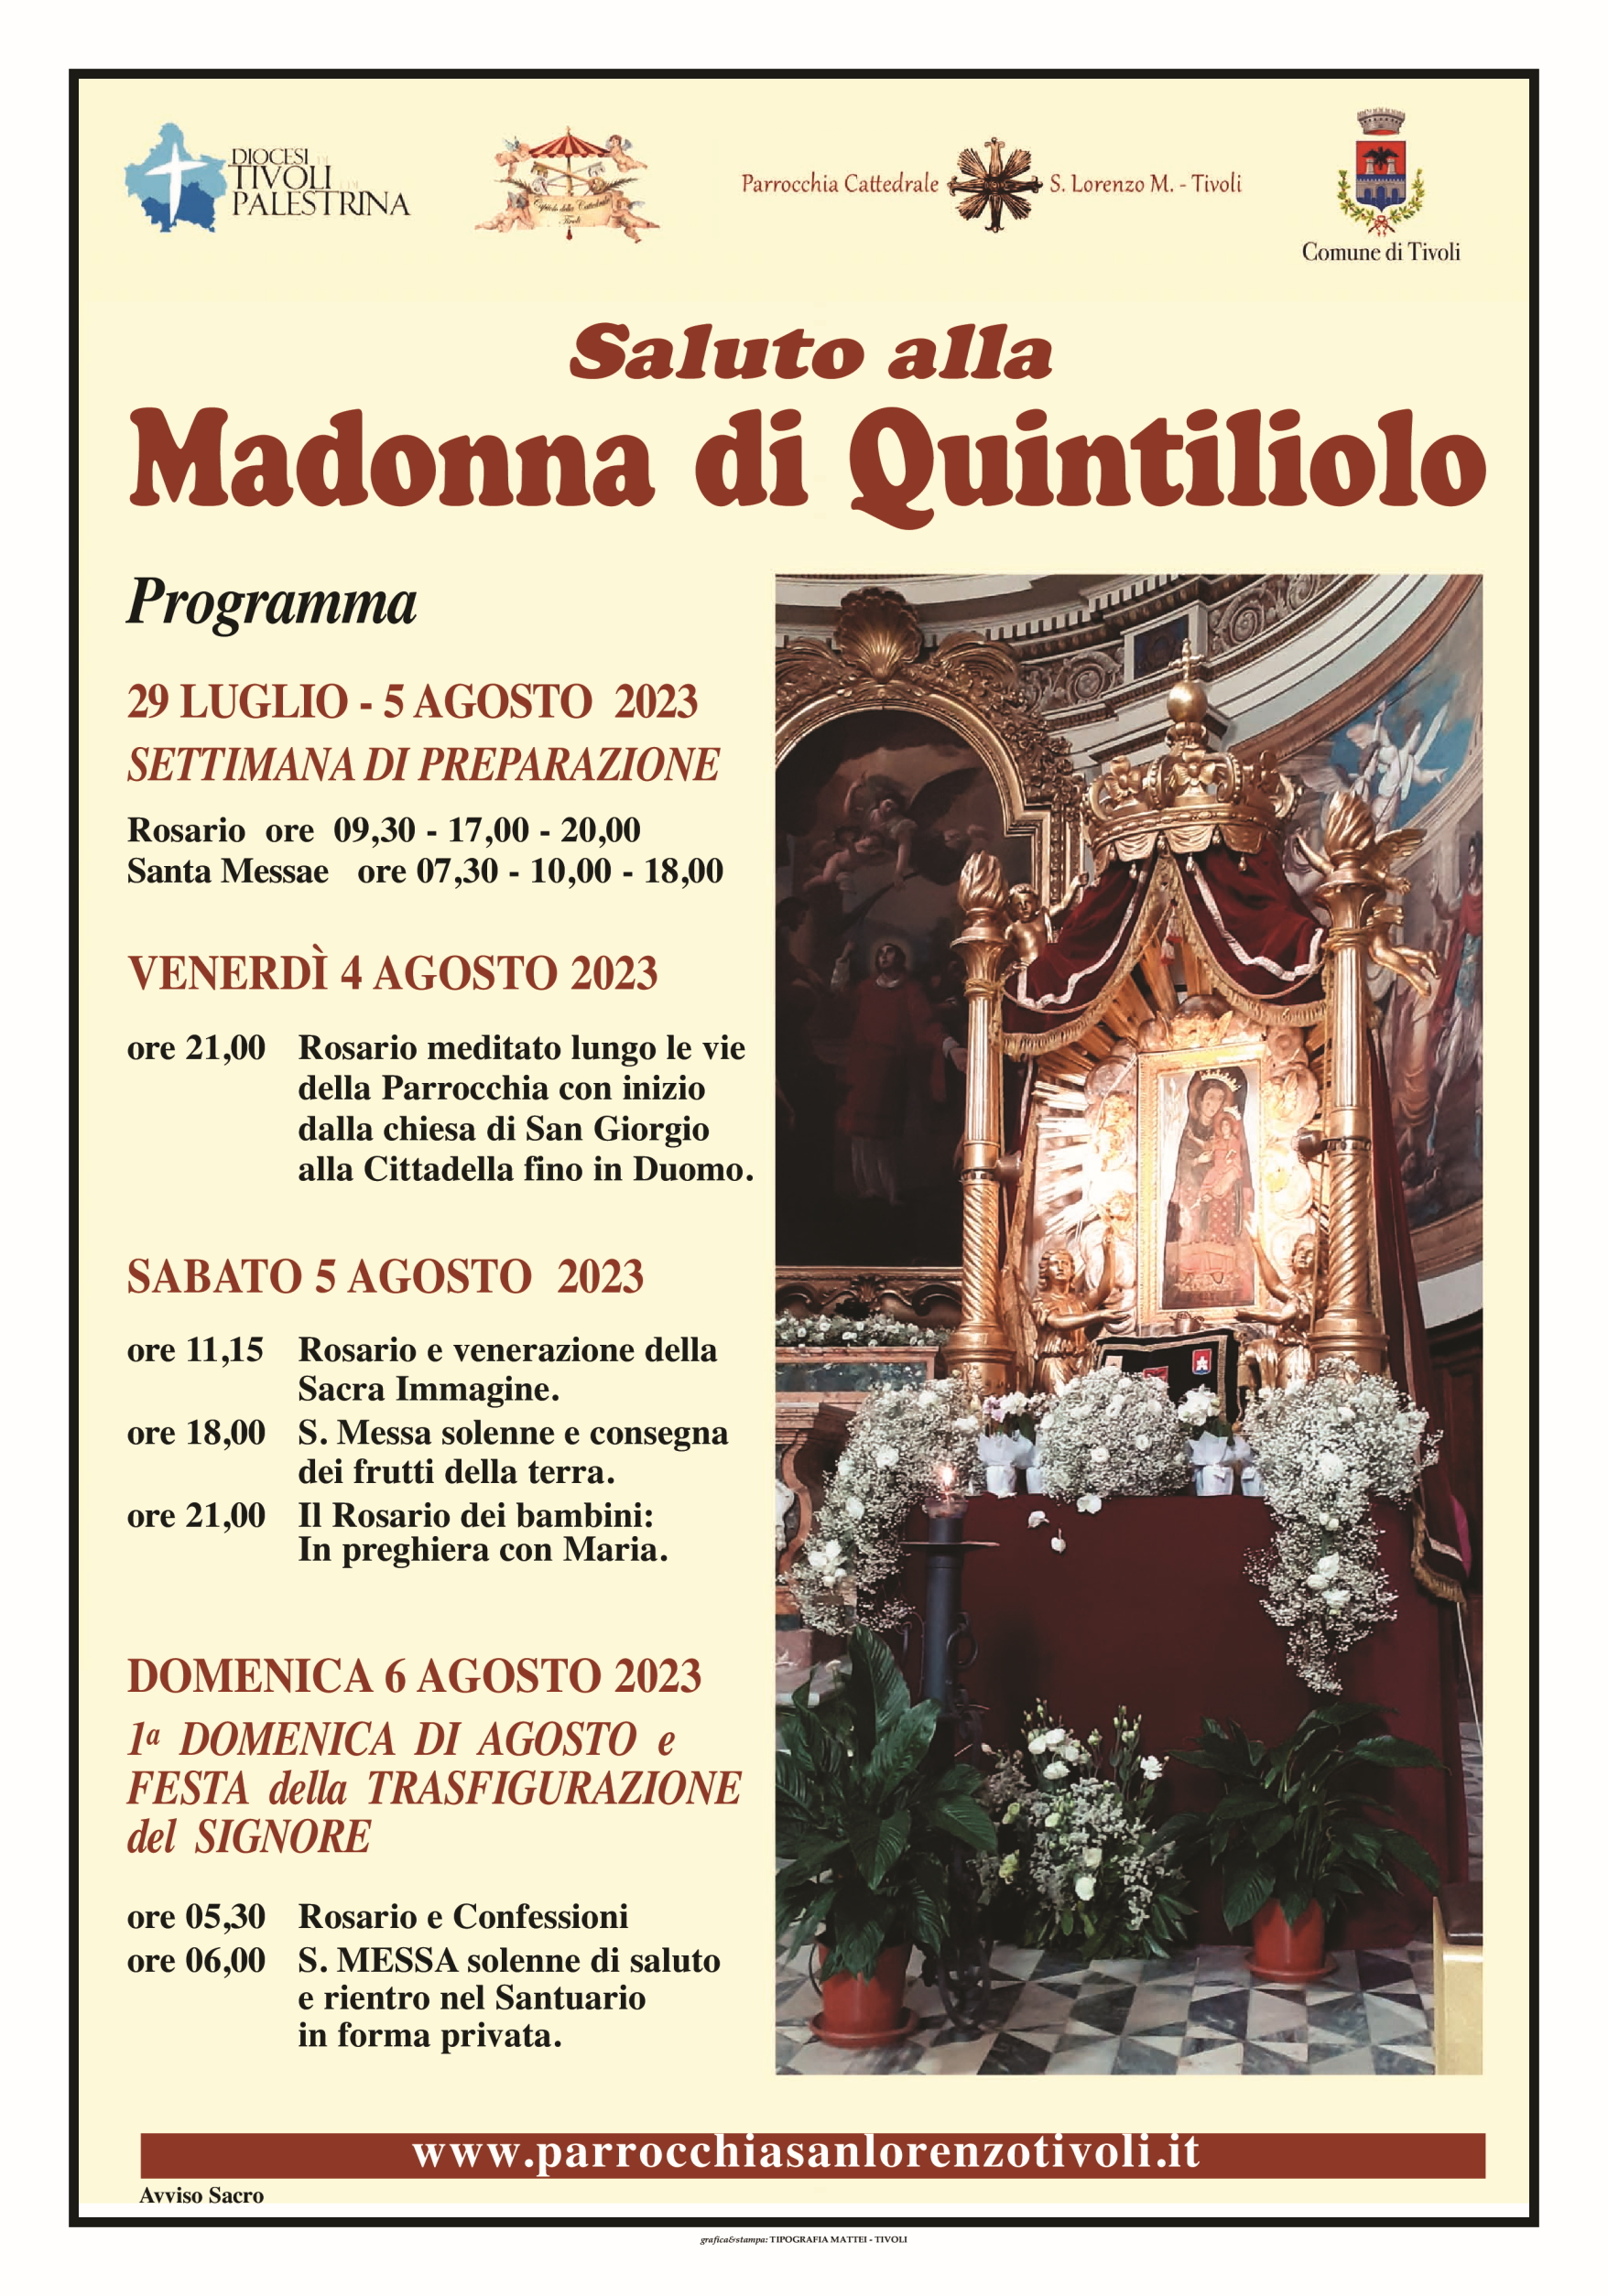 Saluto alla Madonna di Quintiliolo. Settimana di preparazione e Messe solenni sabato 5 e domenica 6 agosto 2023. Il Programma